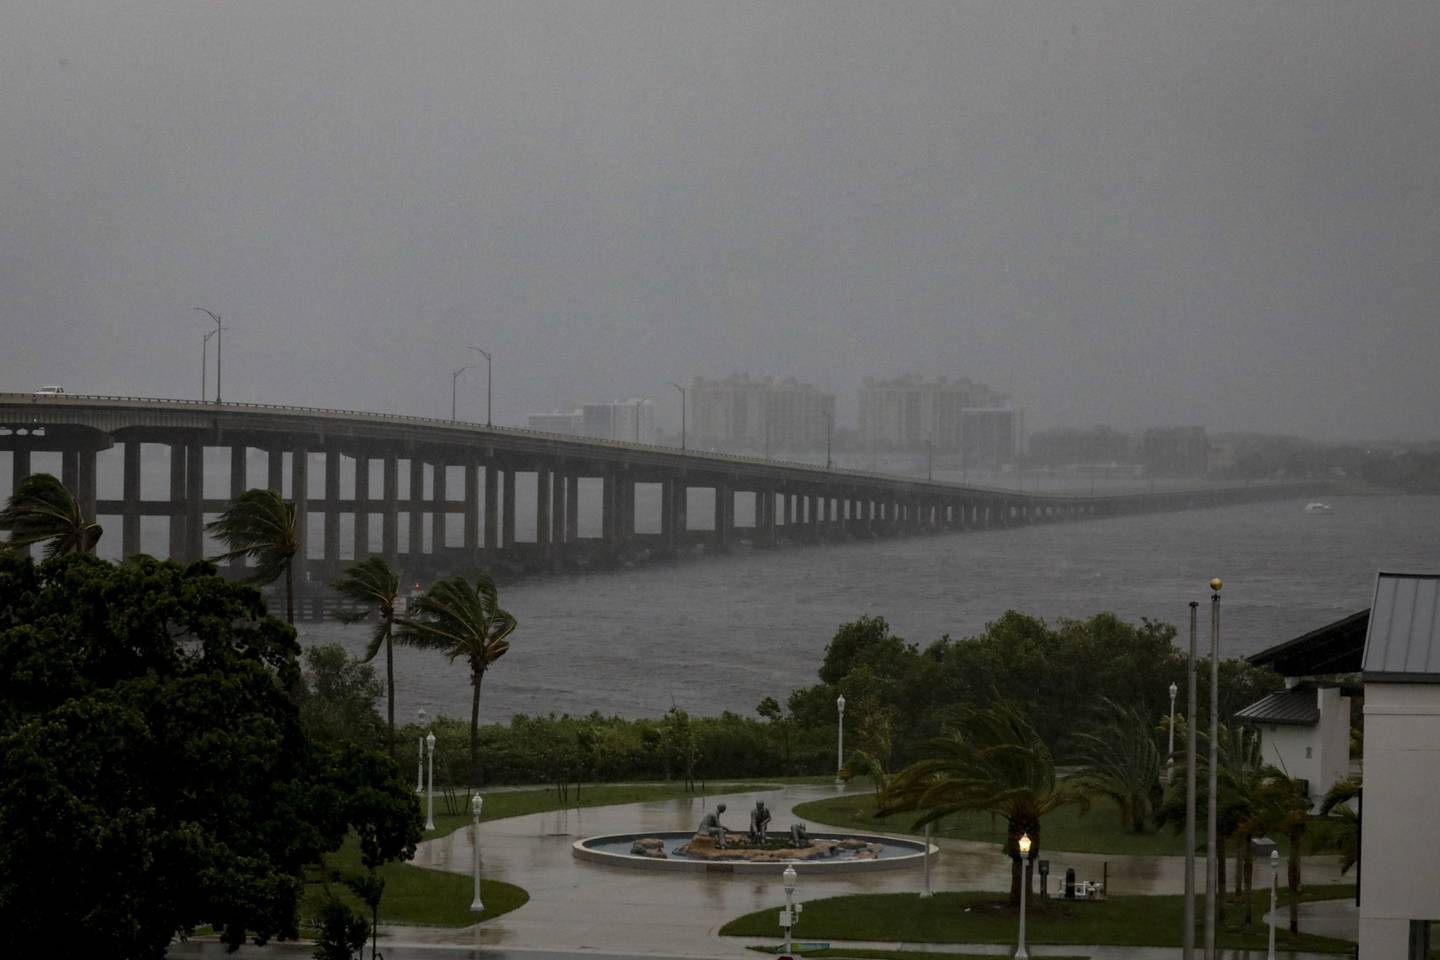 El puente Caloosahatchee antes del huracán Ian en Fort Myers, Florida, Estados Unidos, el miércoles 28 de septiembre de 2022. El huracán Ian cobró fuerza rápidamente -con vientos que alcanzaron las 155 millas por hora- a medida que se acercaba a la costa de Florida, amenazando con arrancar los tejados de las casas, destrozar las cosechas agrícolas y paralizar las infraestructuras como una de las tormentas más costosas que han azotado los Estados Unidos. Fotógrafa: Eva Marie Uzcategui/Bloomberg